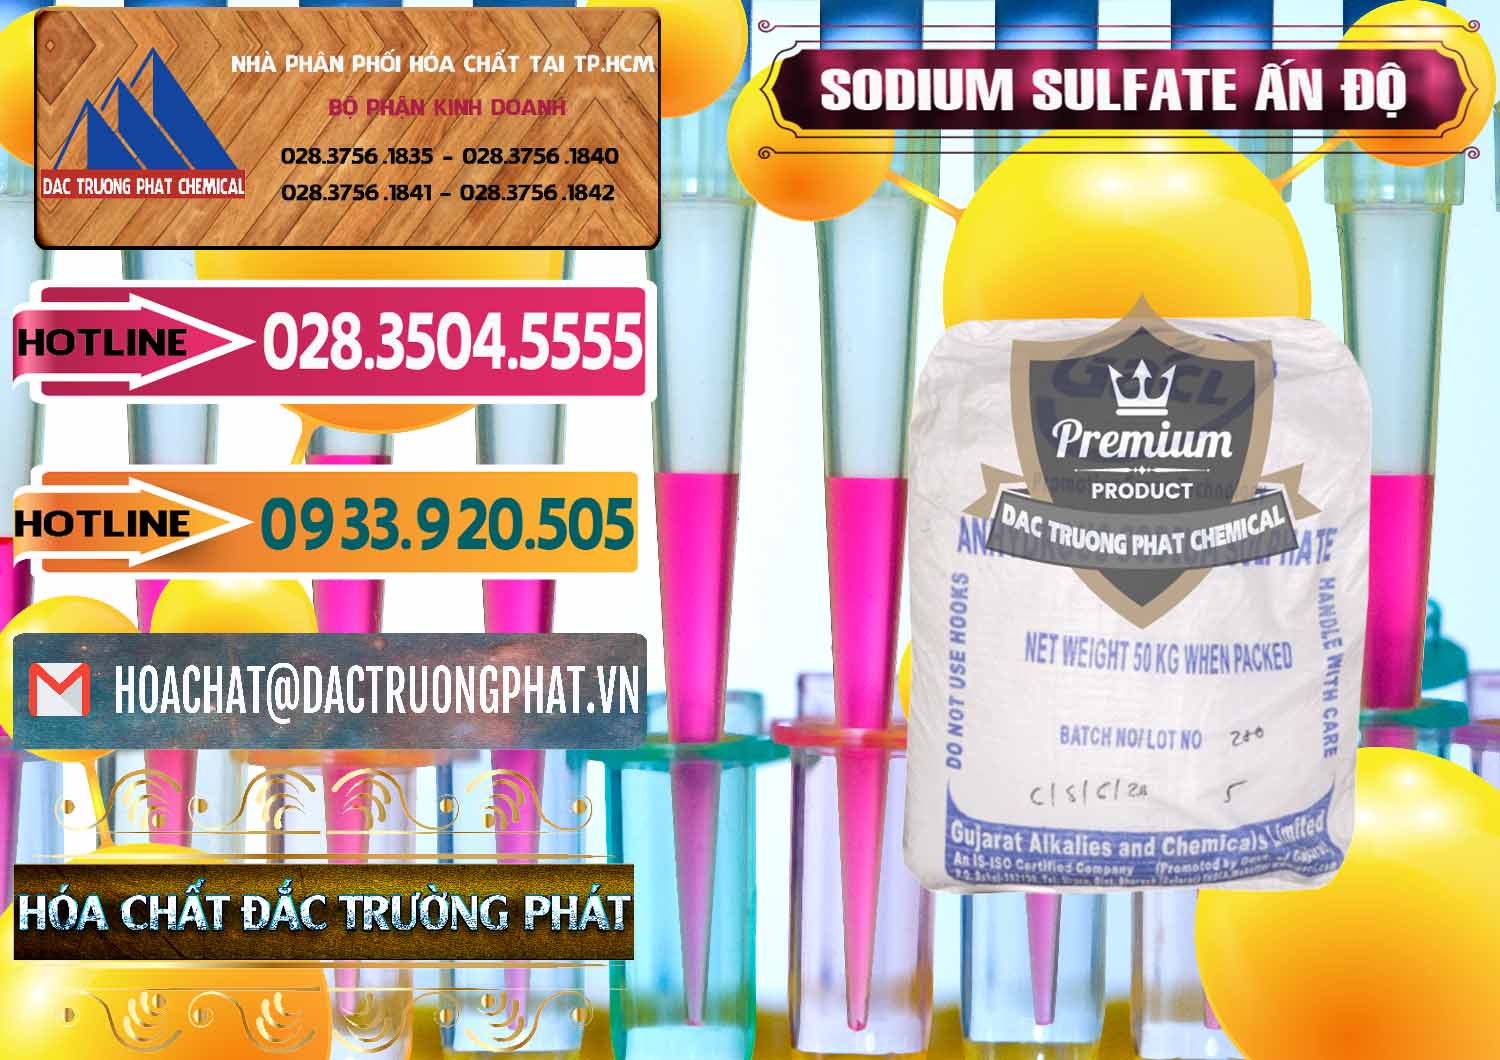 Đơn vị chuyên bán & cung ứng Sodium Sulphate - Muối Sunfat Na2SO4 GACL Ấn Độ India - 0461 - Nơi cung cấp & phân phối hóa chất tại TP.HCM - dactruongphat.vn